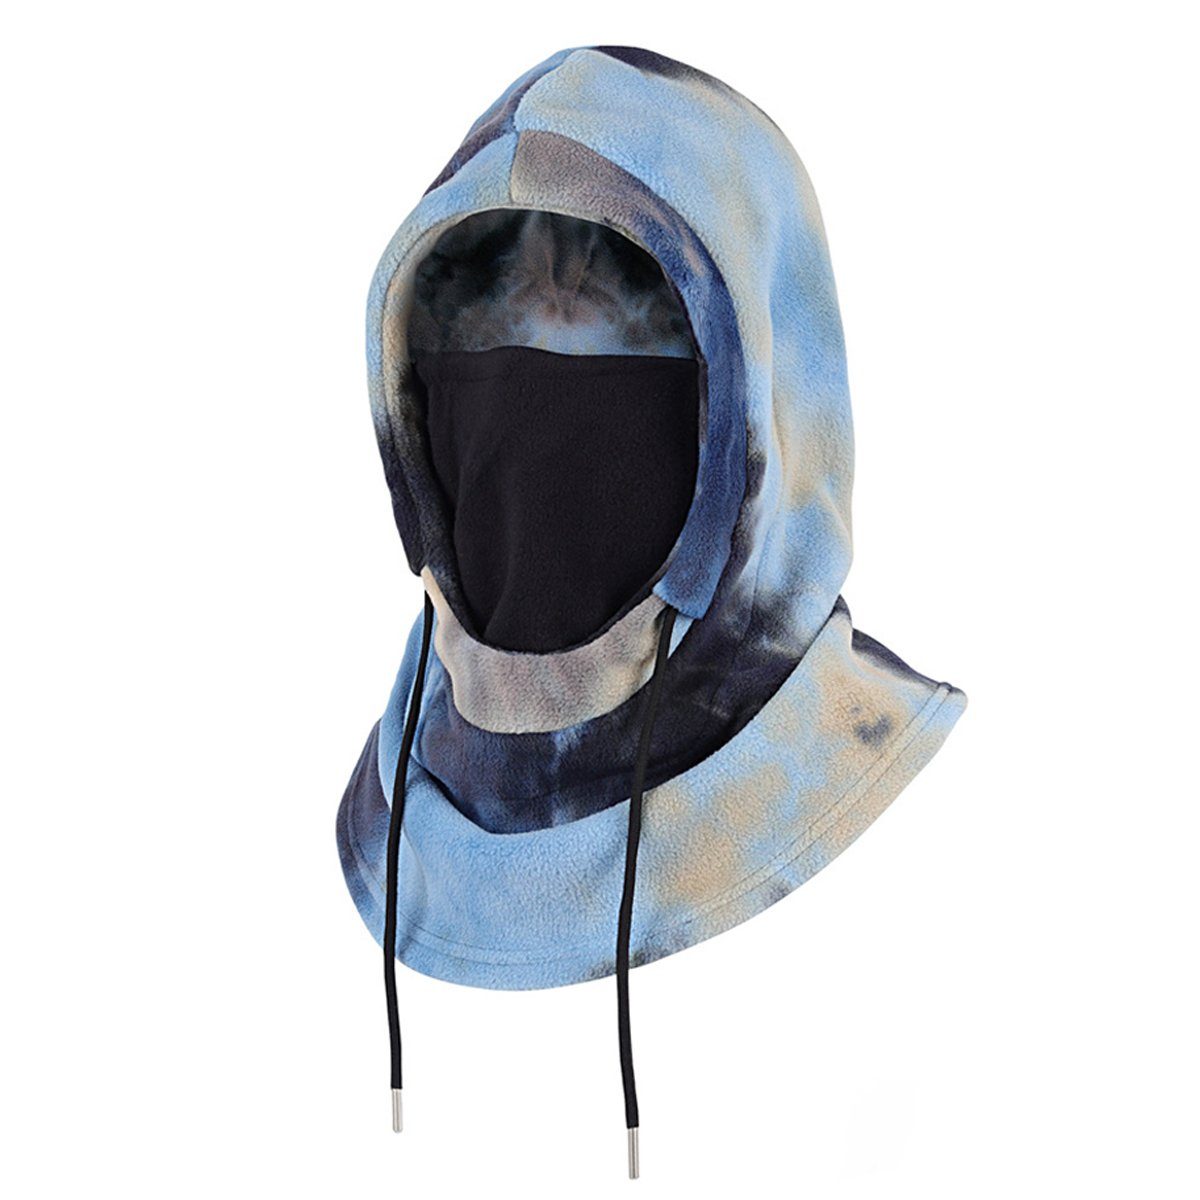 ZmdecQna Sturmhaube Winter Skimaske, Winddichte warme Gesichtsmaske für Männer Frauen marineblau